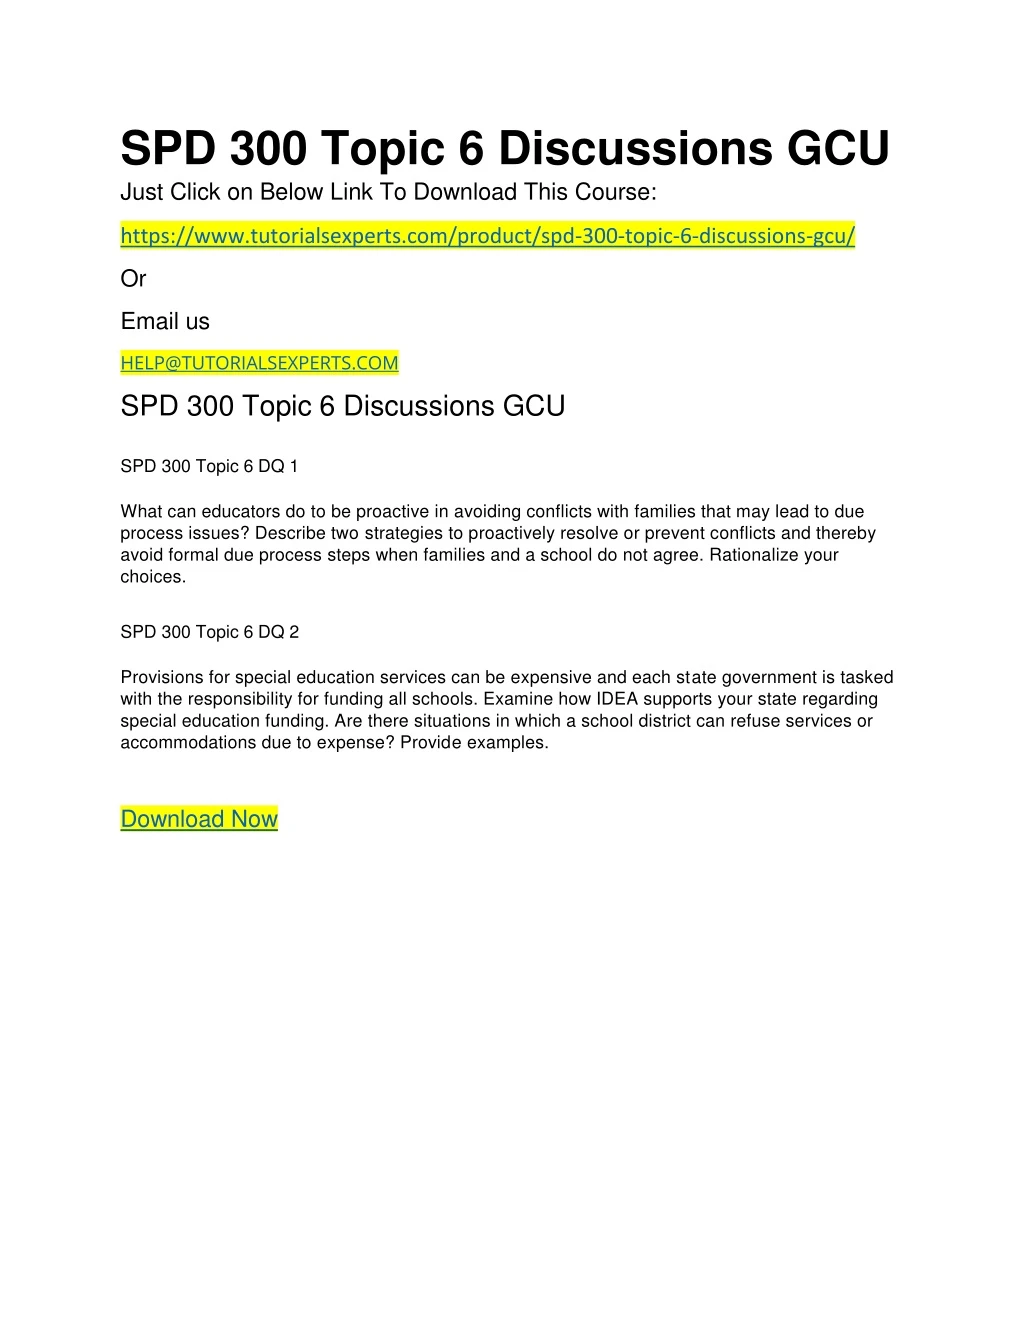 spd 300 topic 6 discussions gcu just click